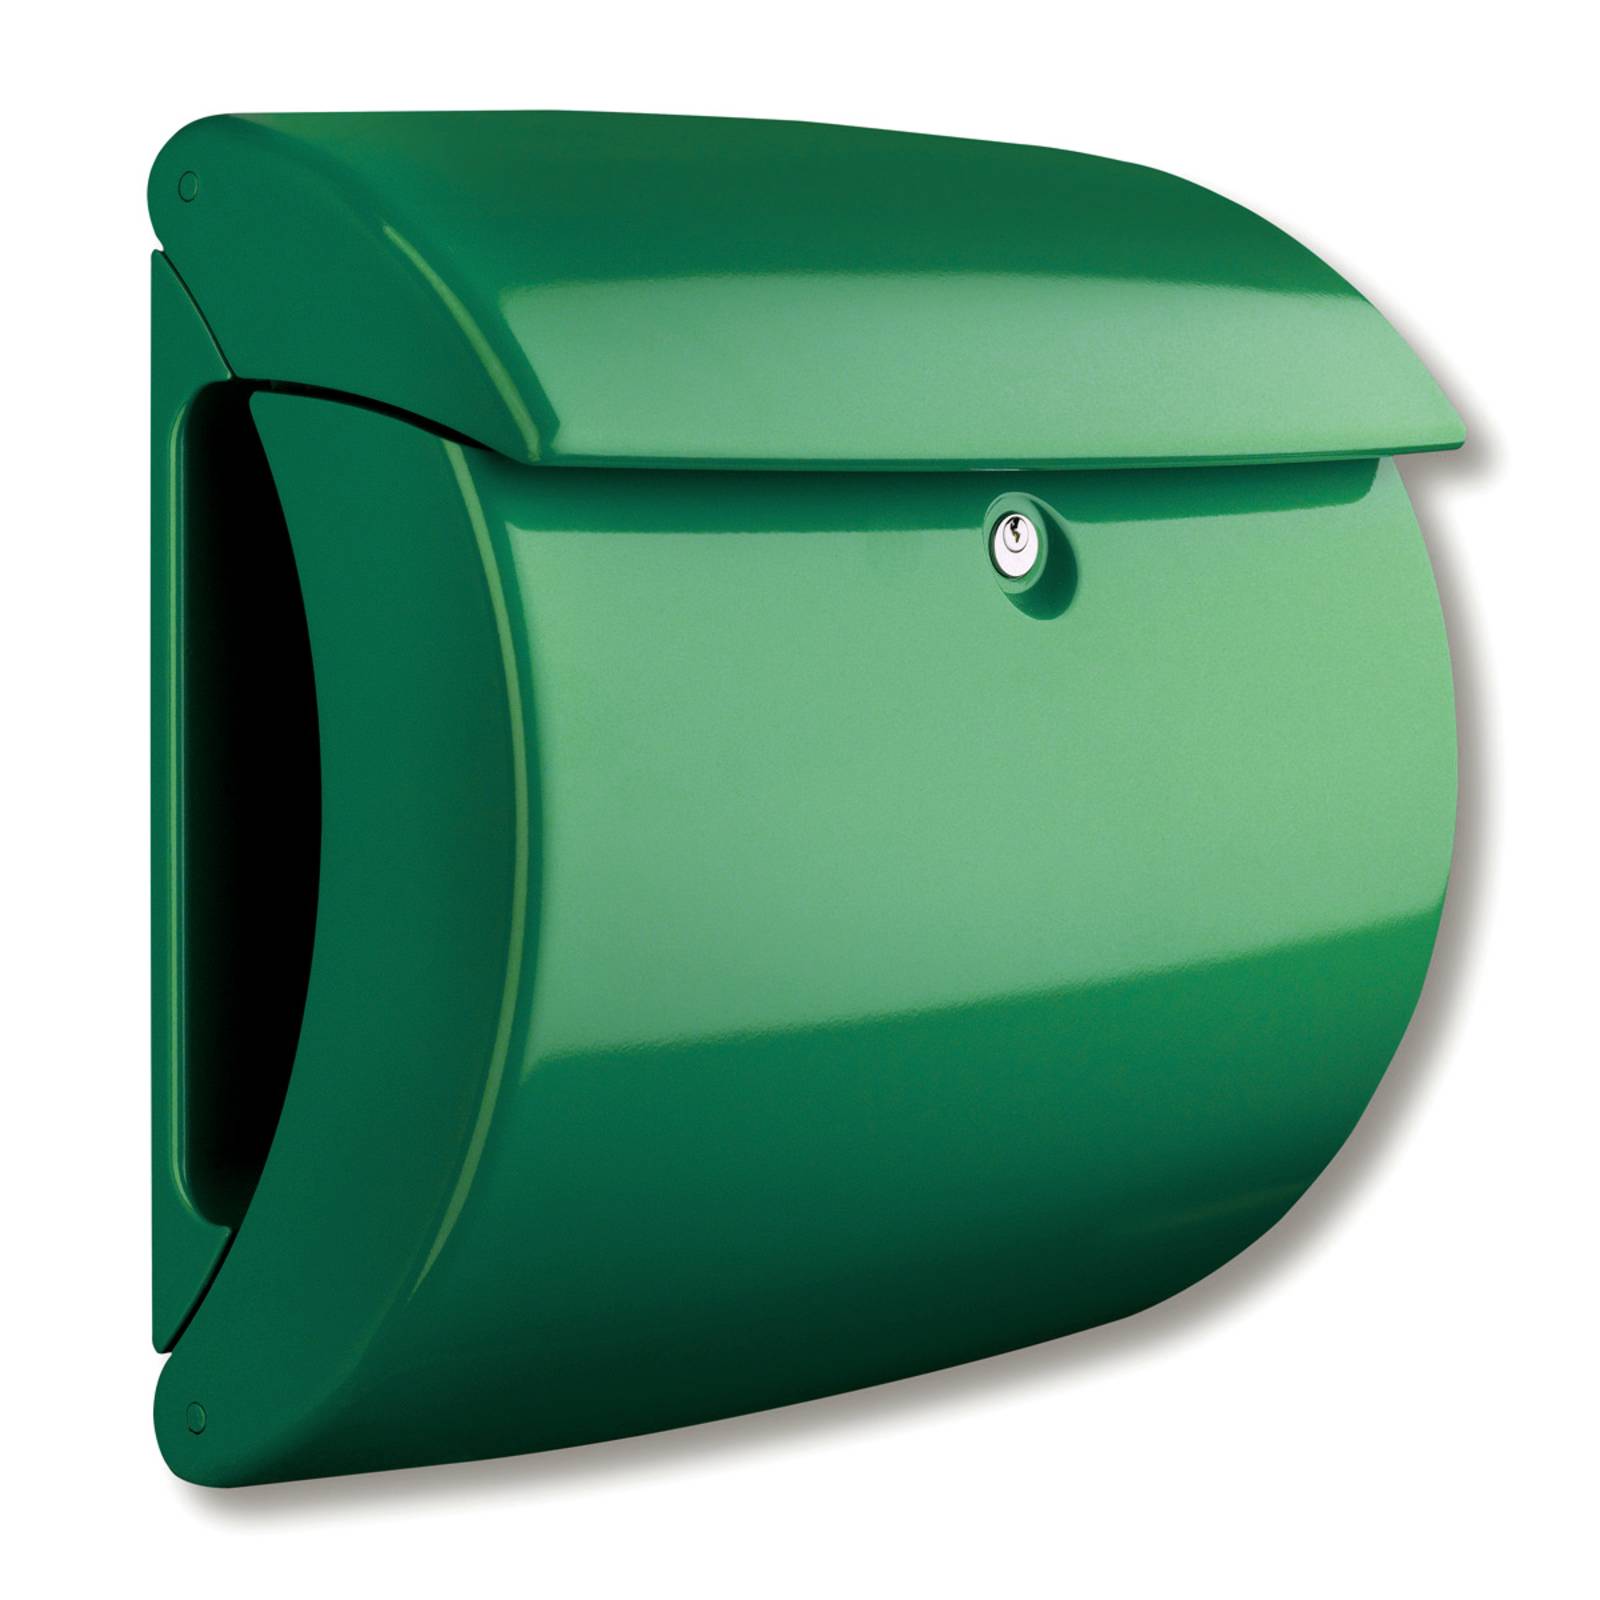 Burgwächter Briefkasten Kiel aus Kunststoff, grün